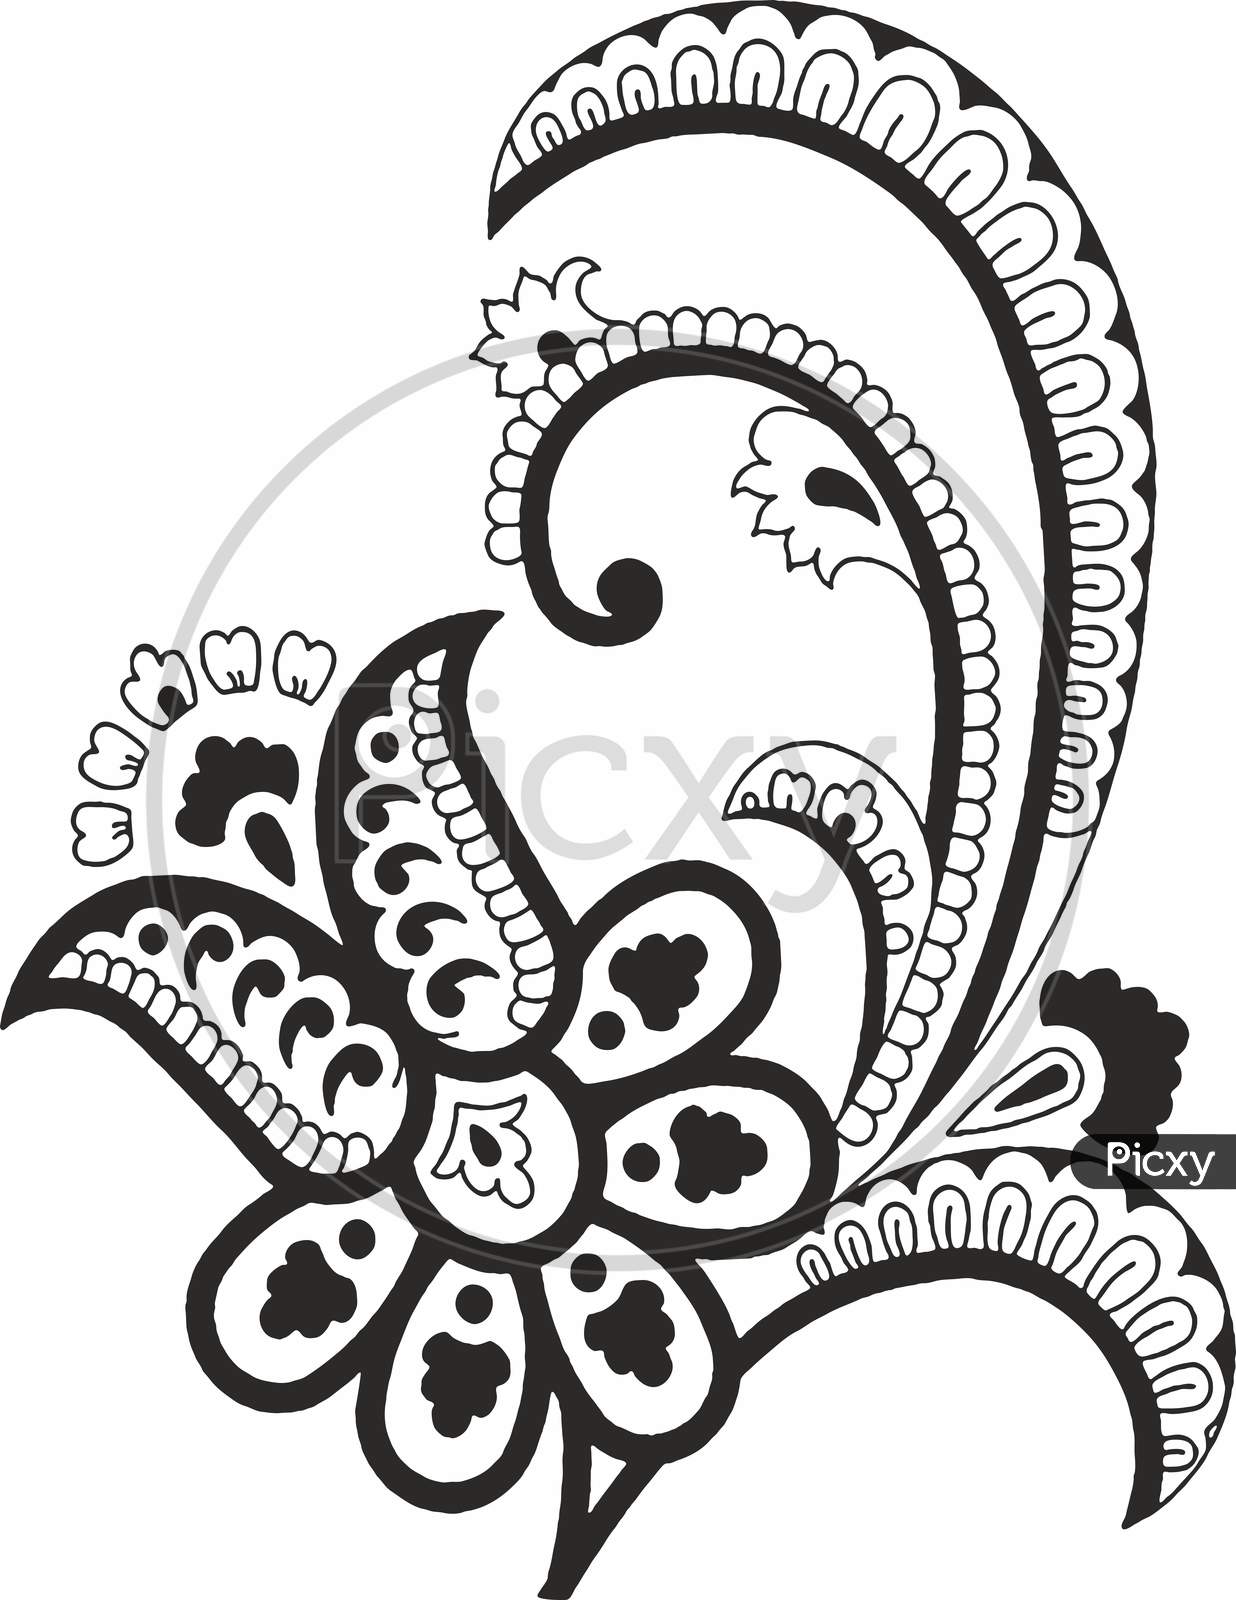 Original hand draw line art ornate flower design Vector Image-saigonsouth.com.vn